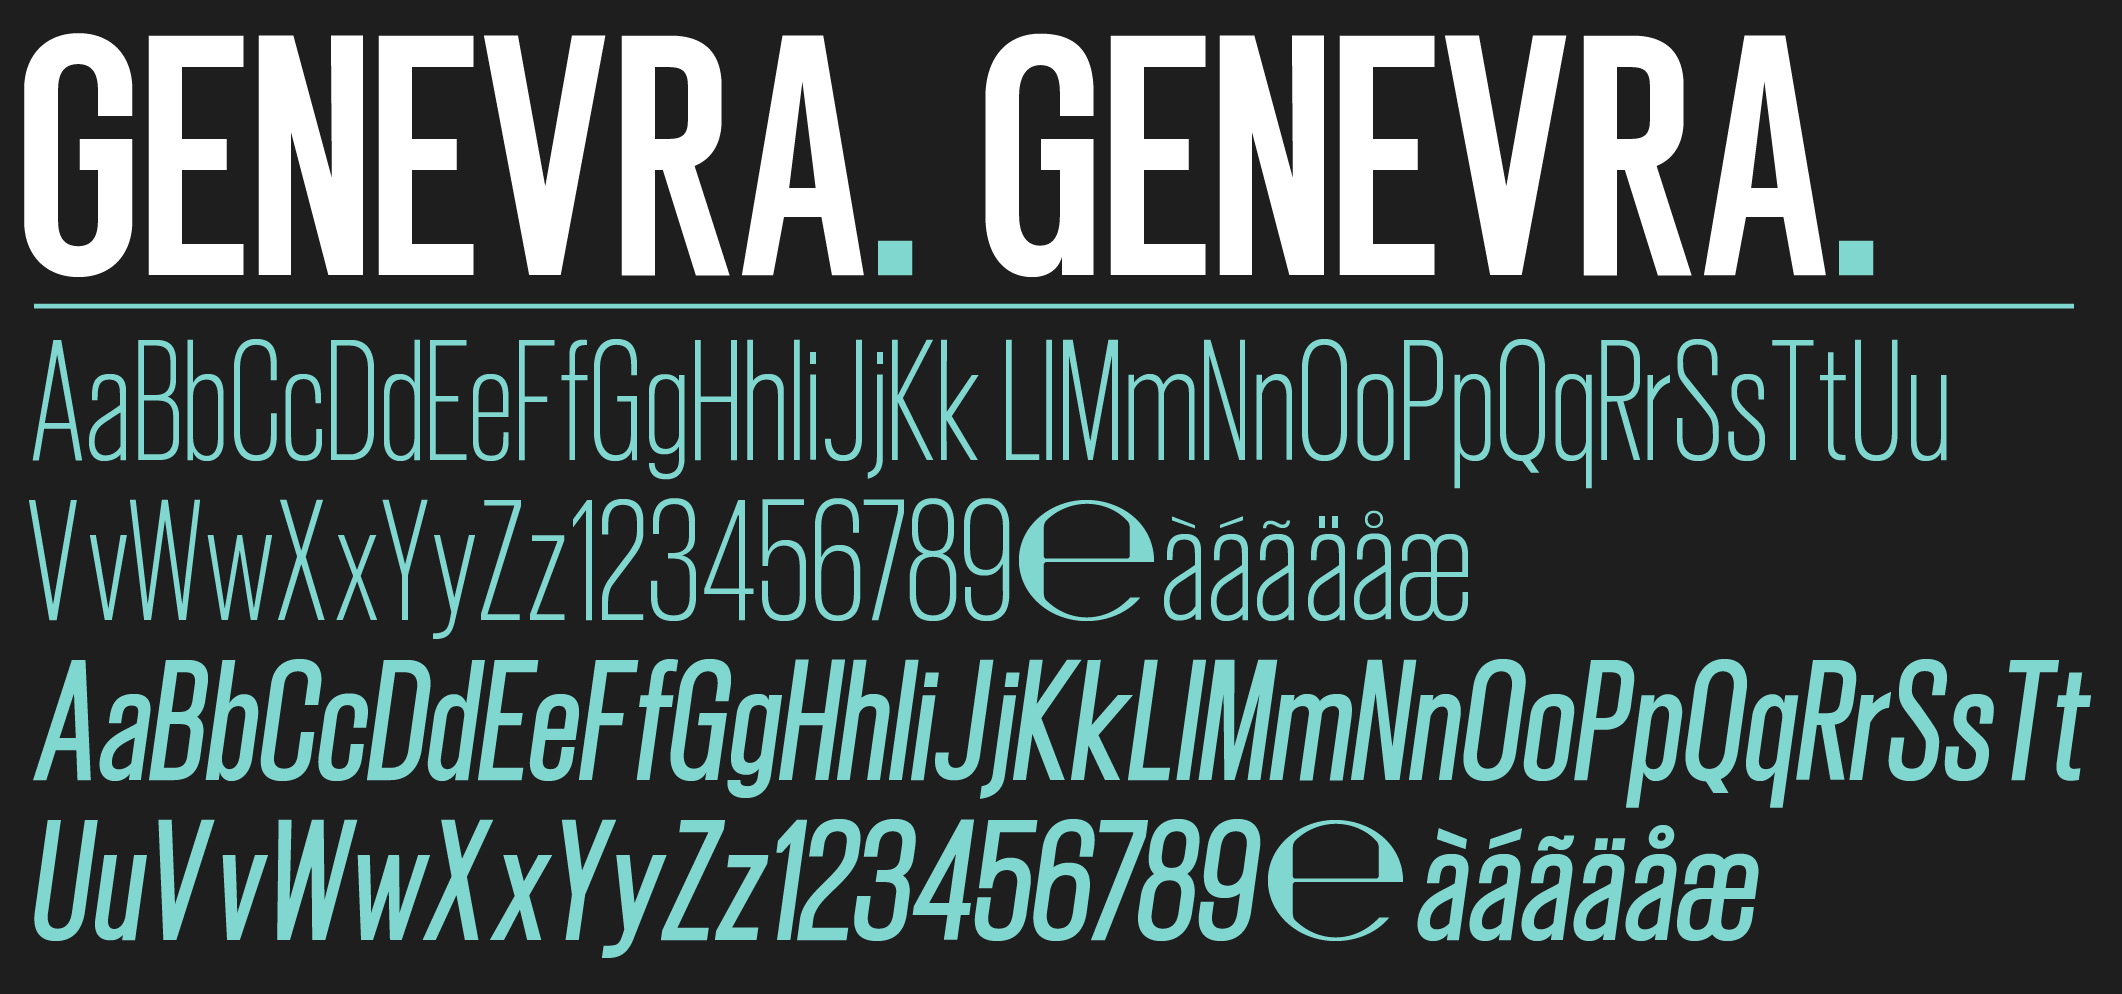 Genevra Designer Font